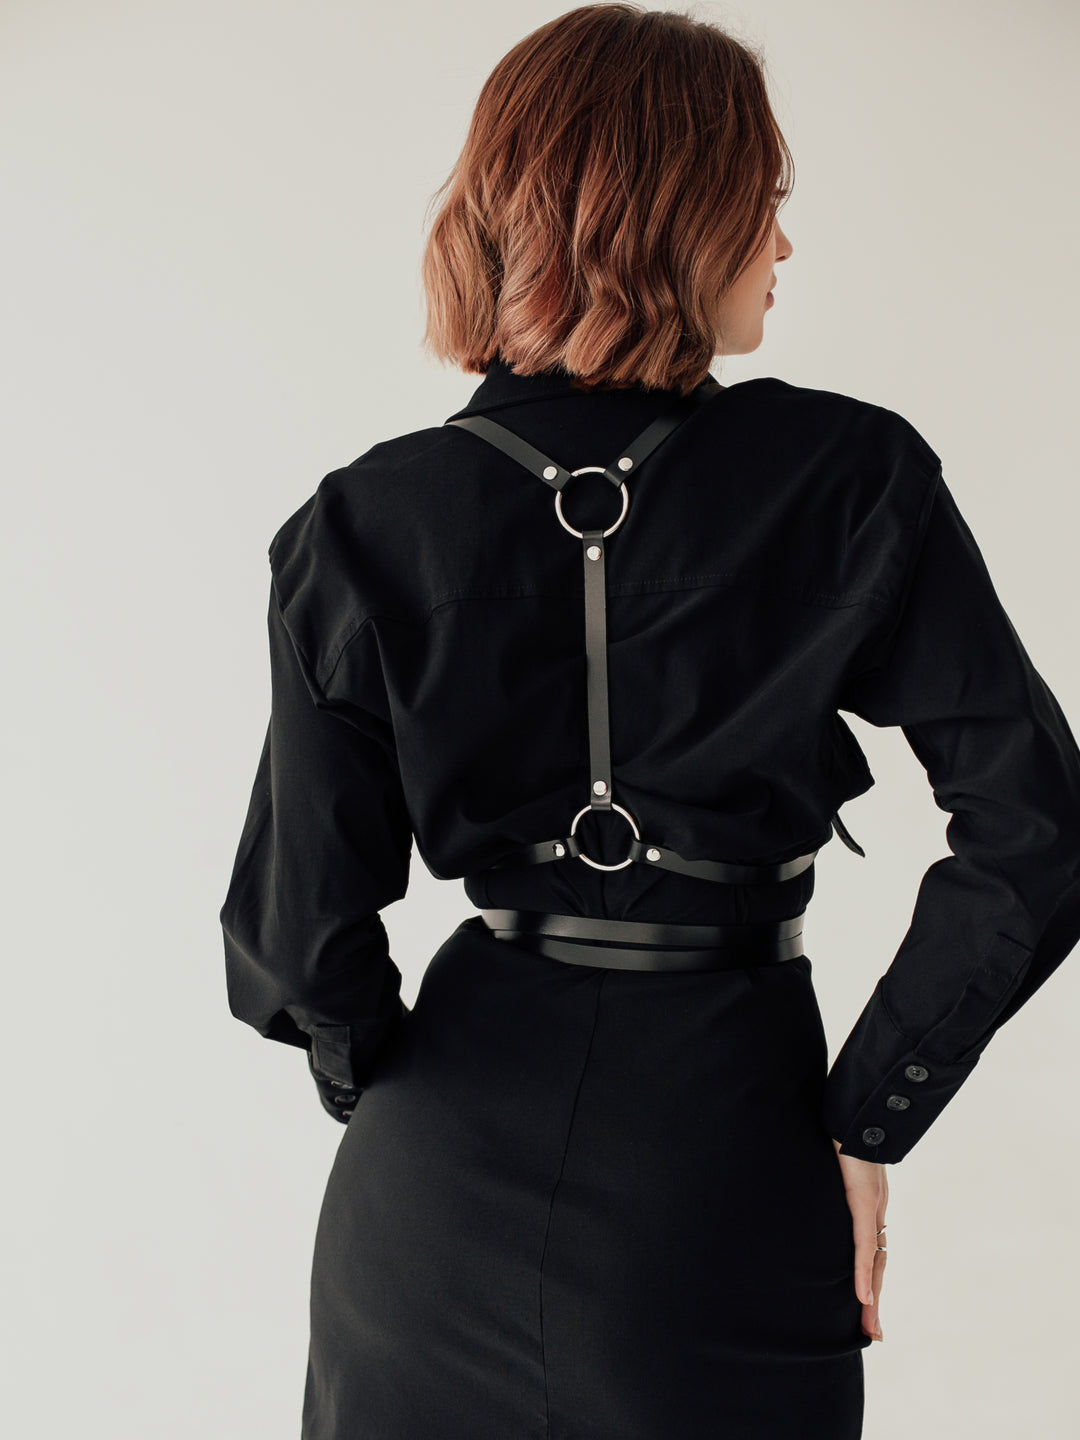 Reverse Harness - buy online, Leather body harness in Bleak&Sleek, USA